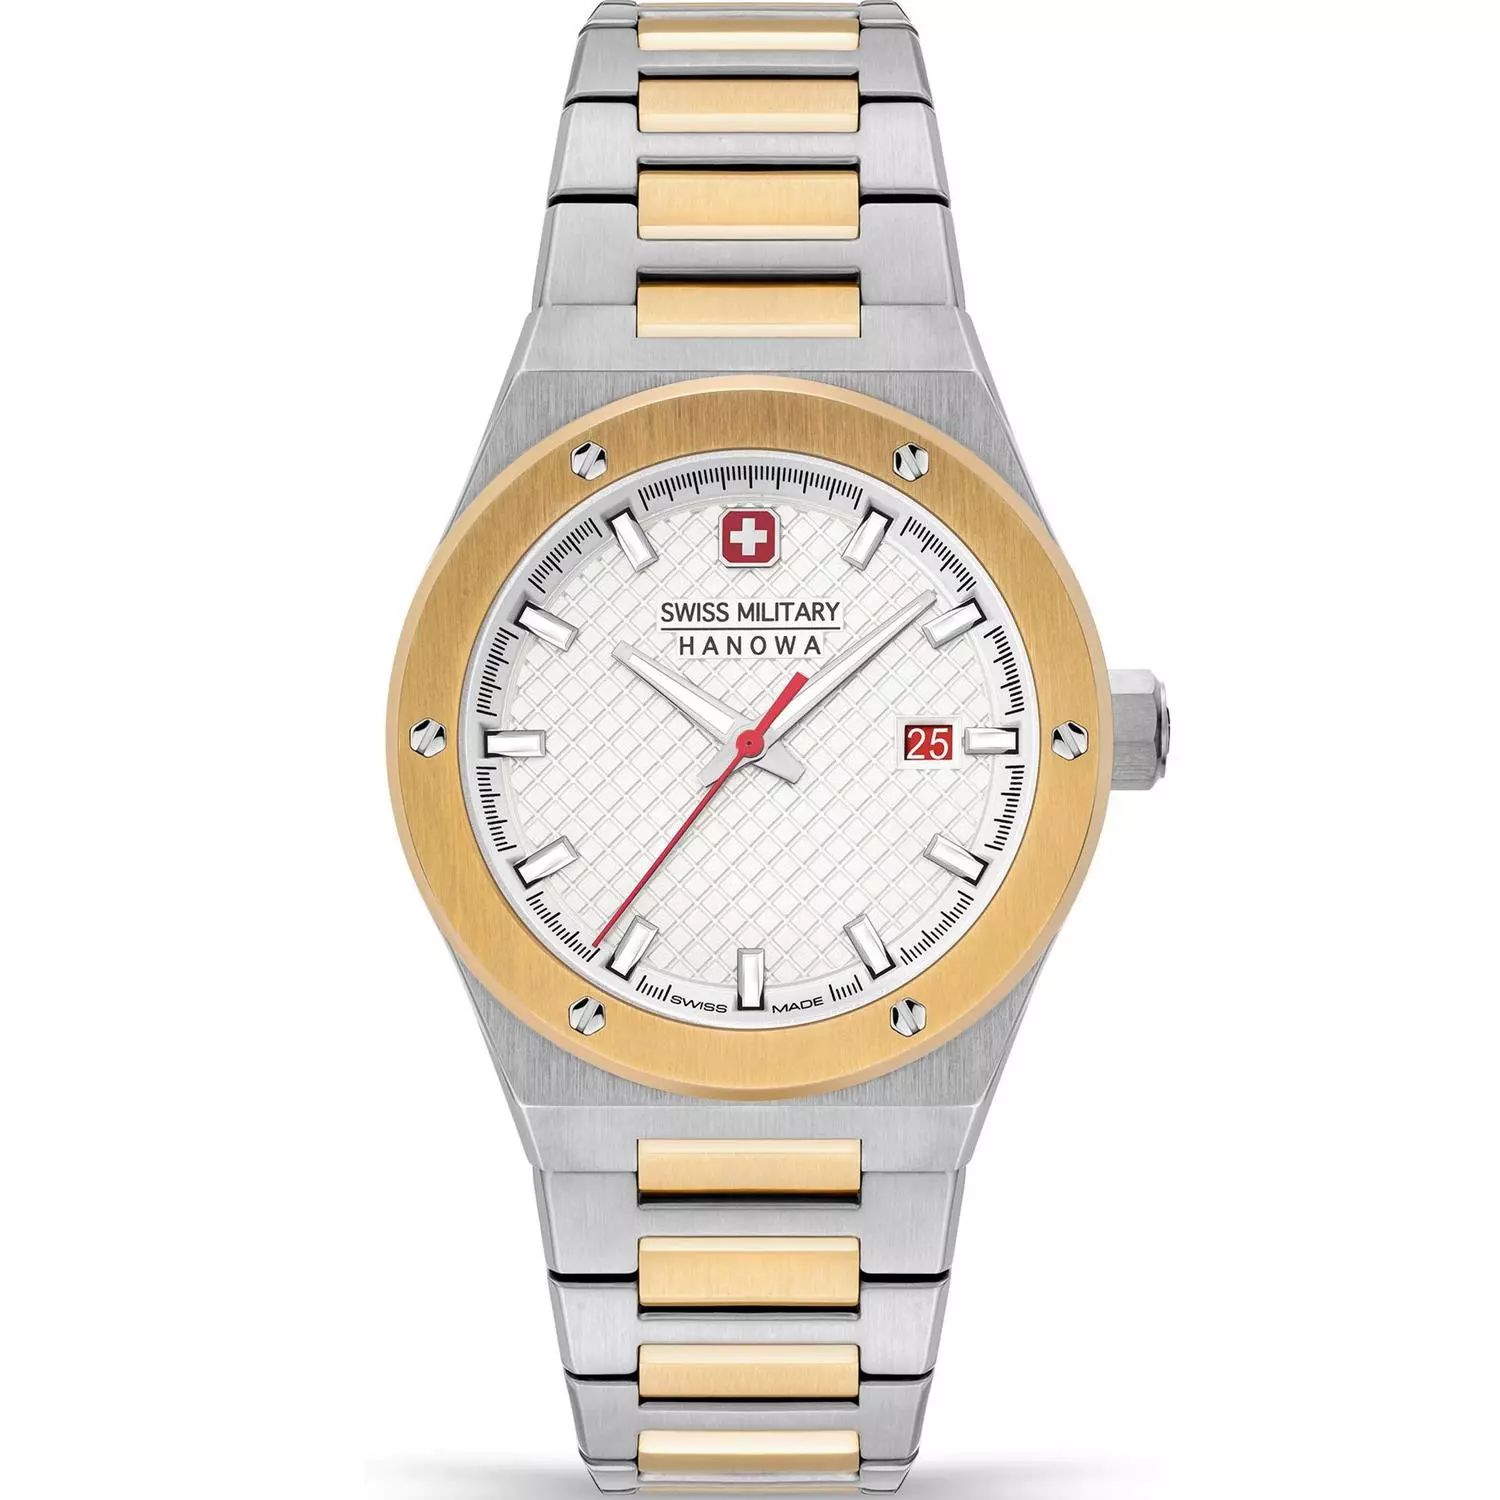 ساعت مچی سوئیس میلیتاری هانوا مدل SMWGH2101660